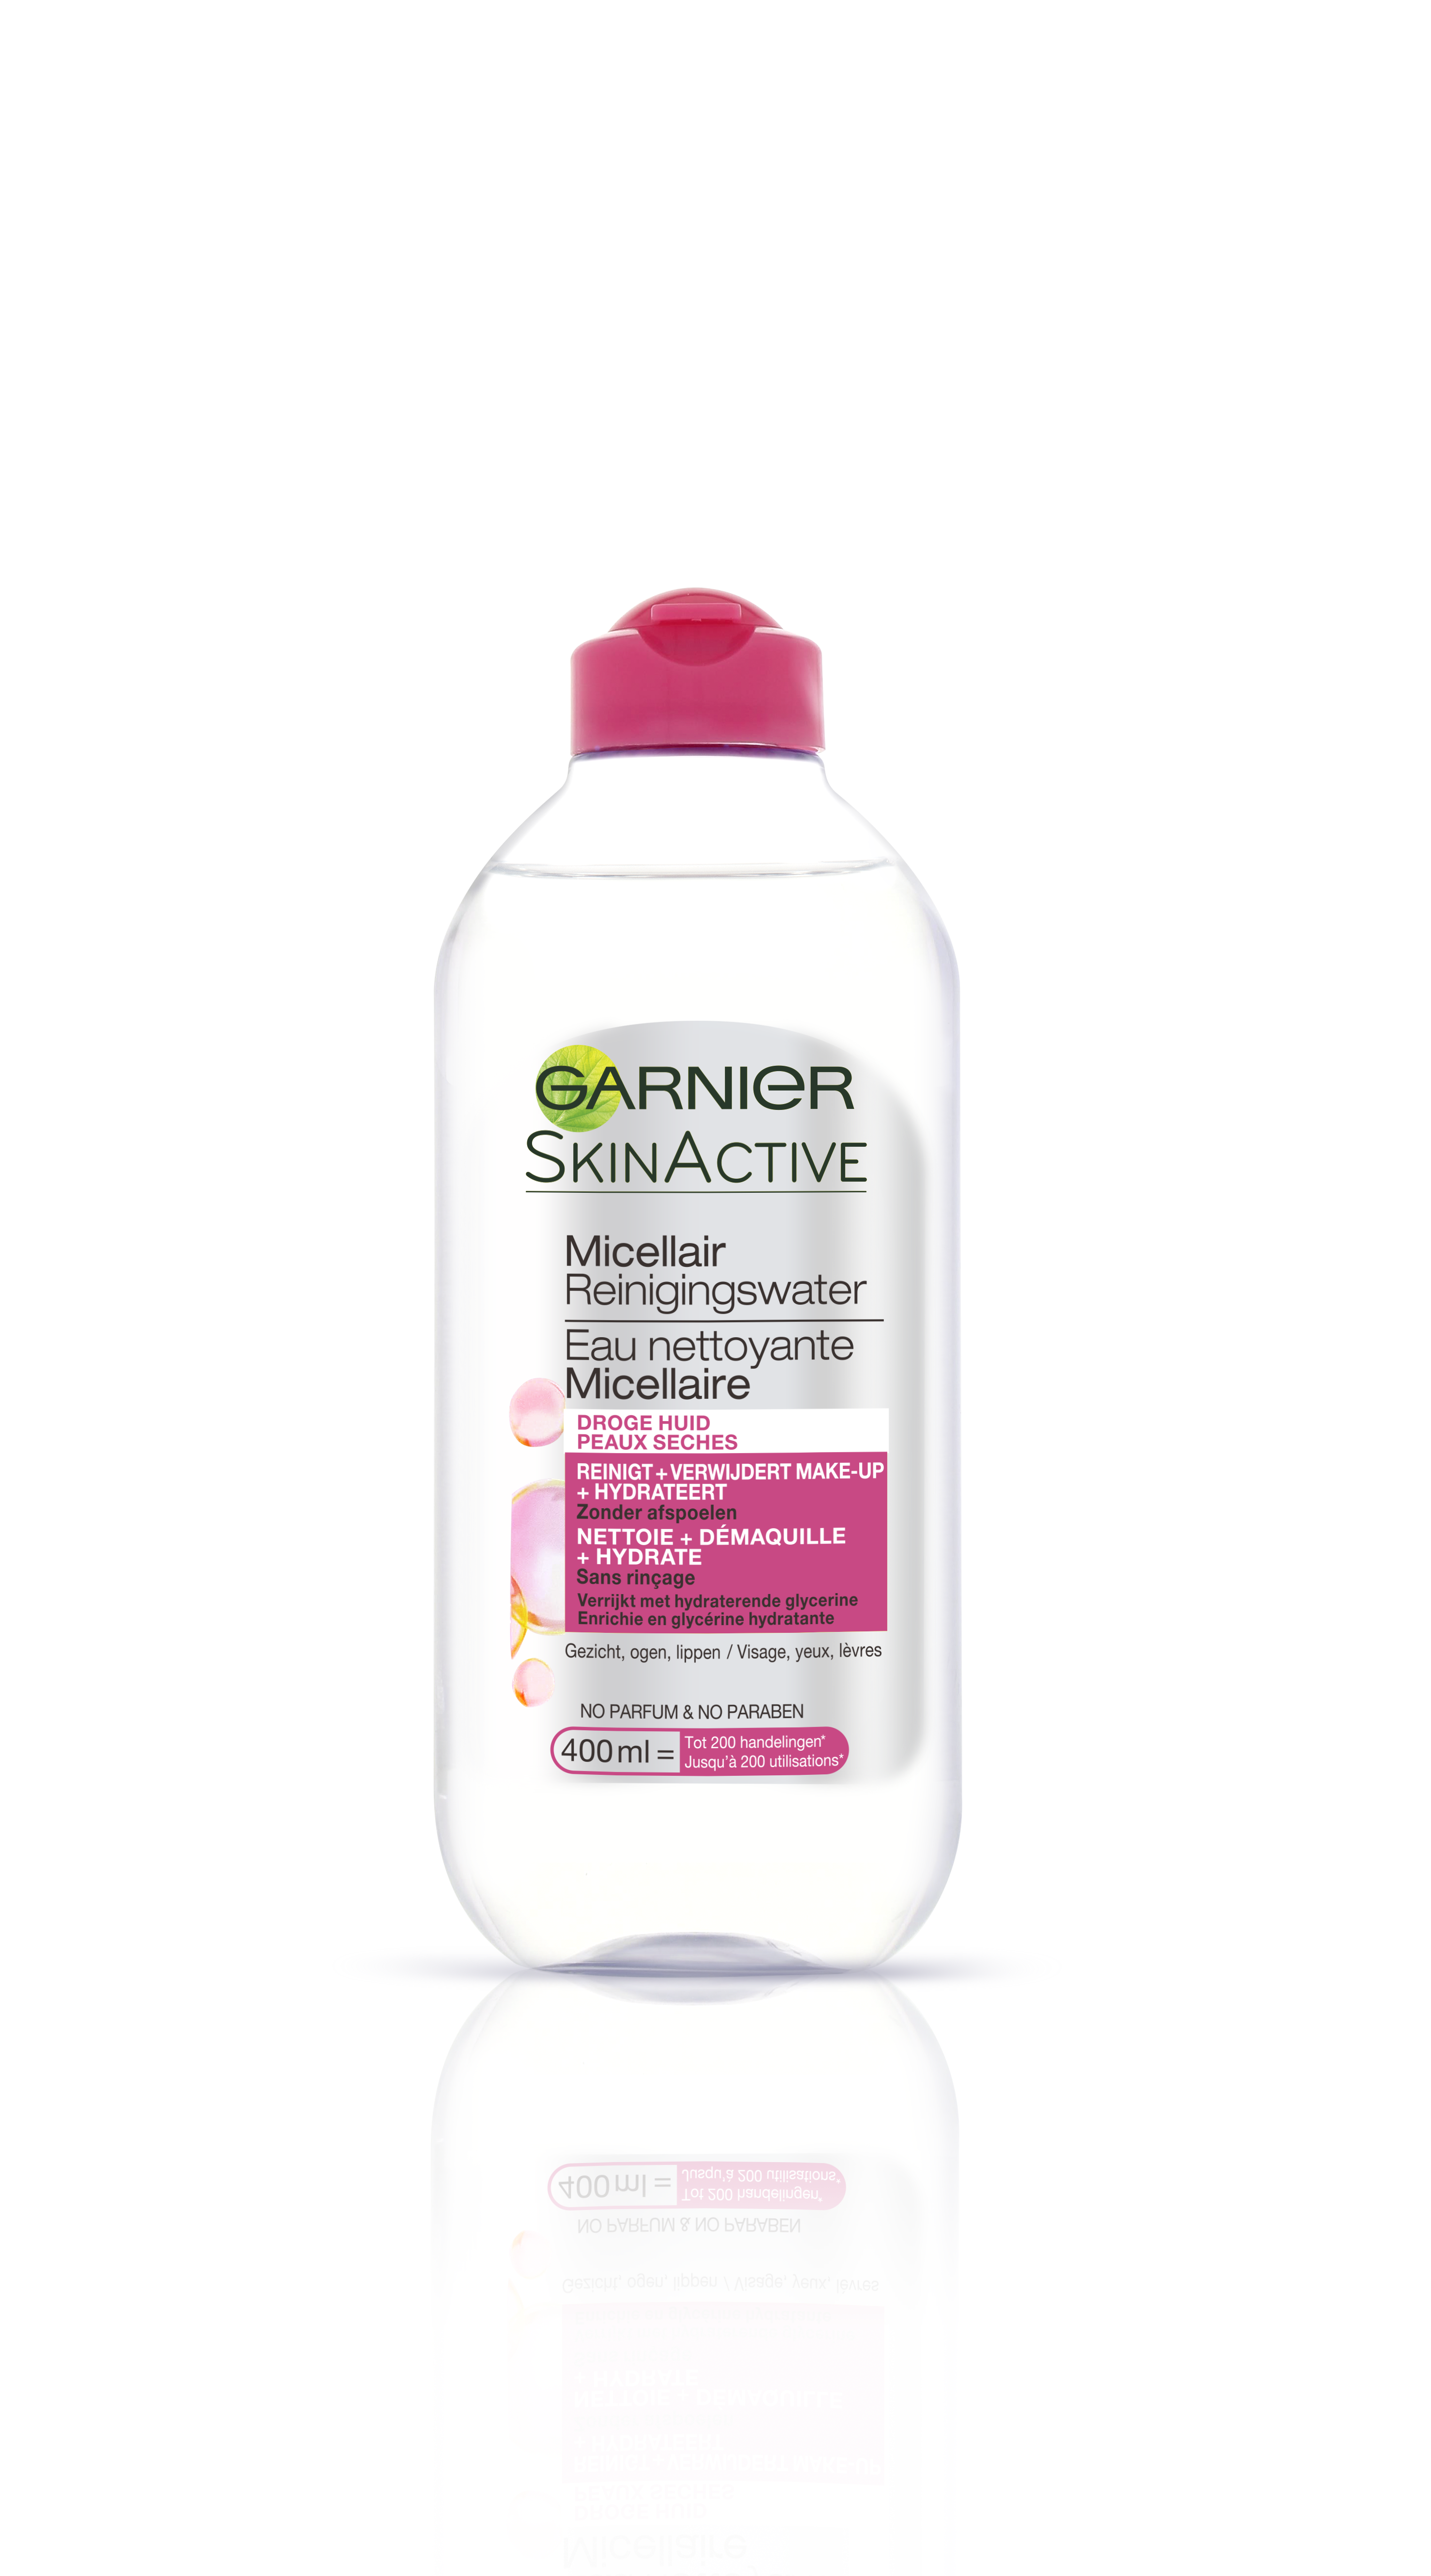 Garnier Skinactive Face SkinActive - Micellair Reinigingswater voor de Droge Huid - 400ml – Reinigingswater